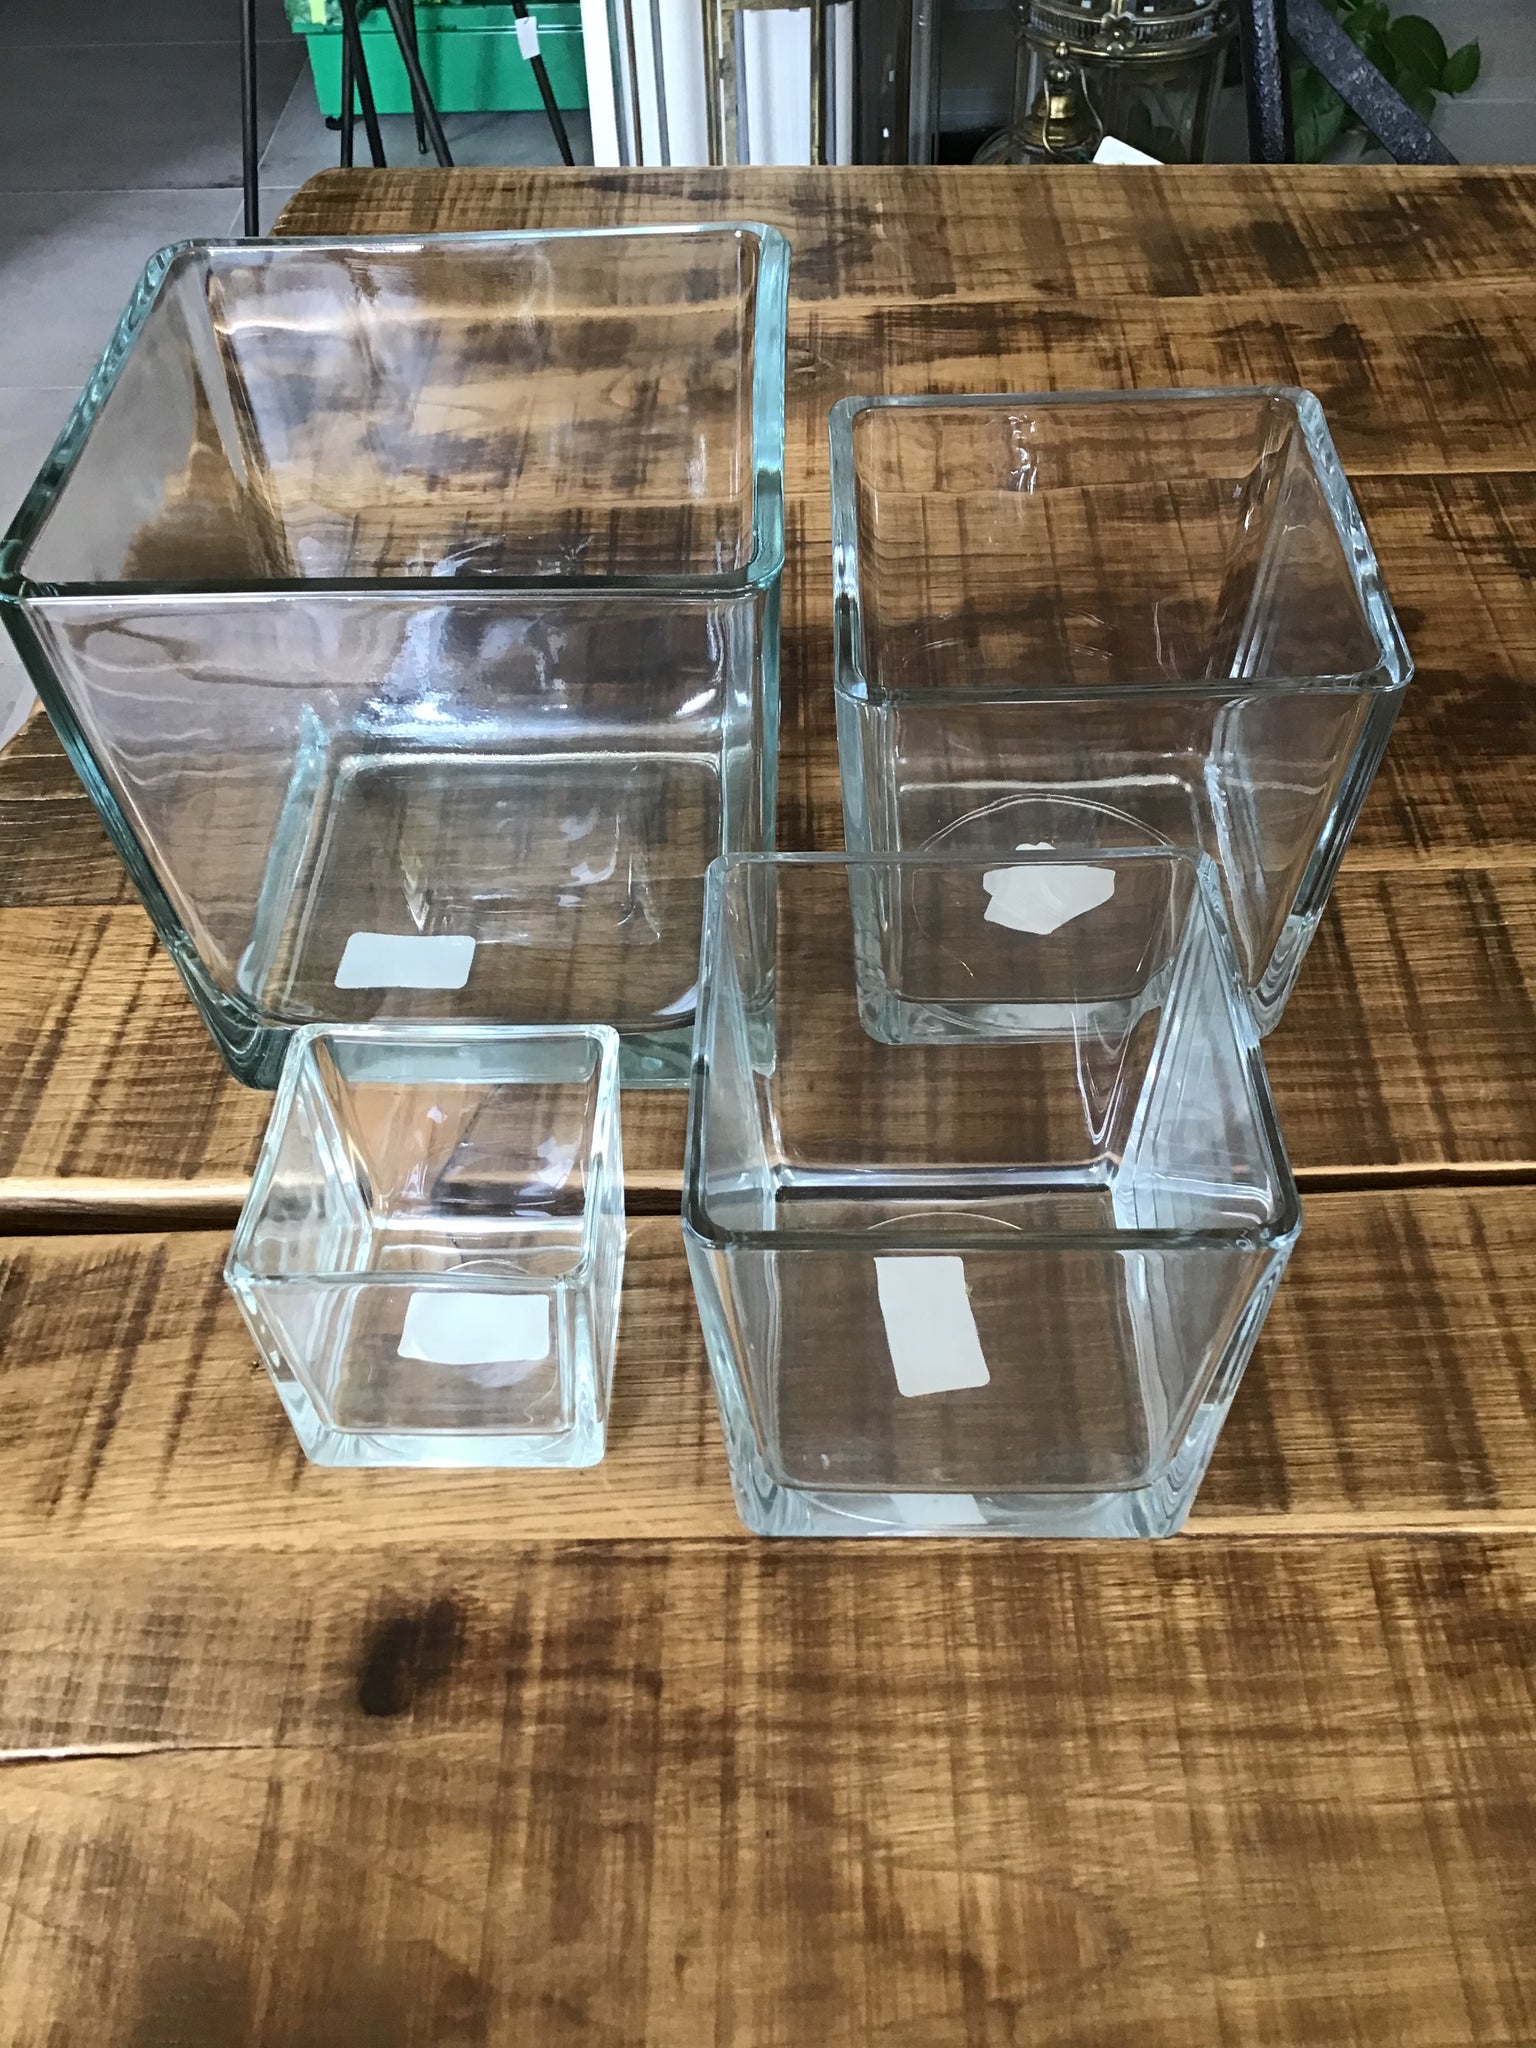 Cubo in vetro